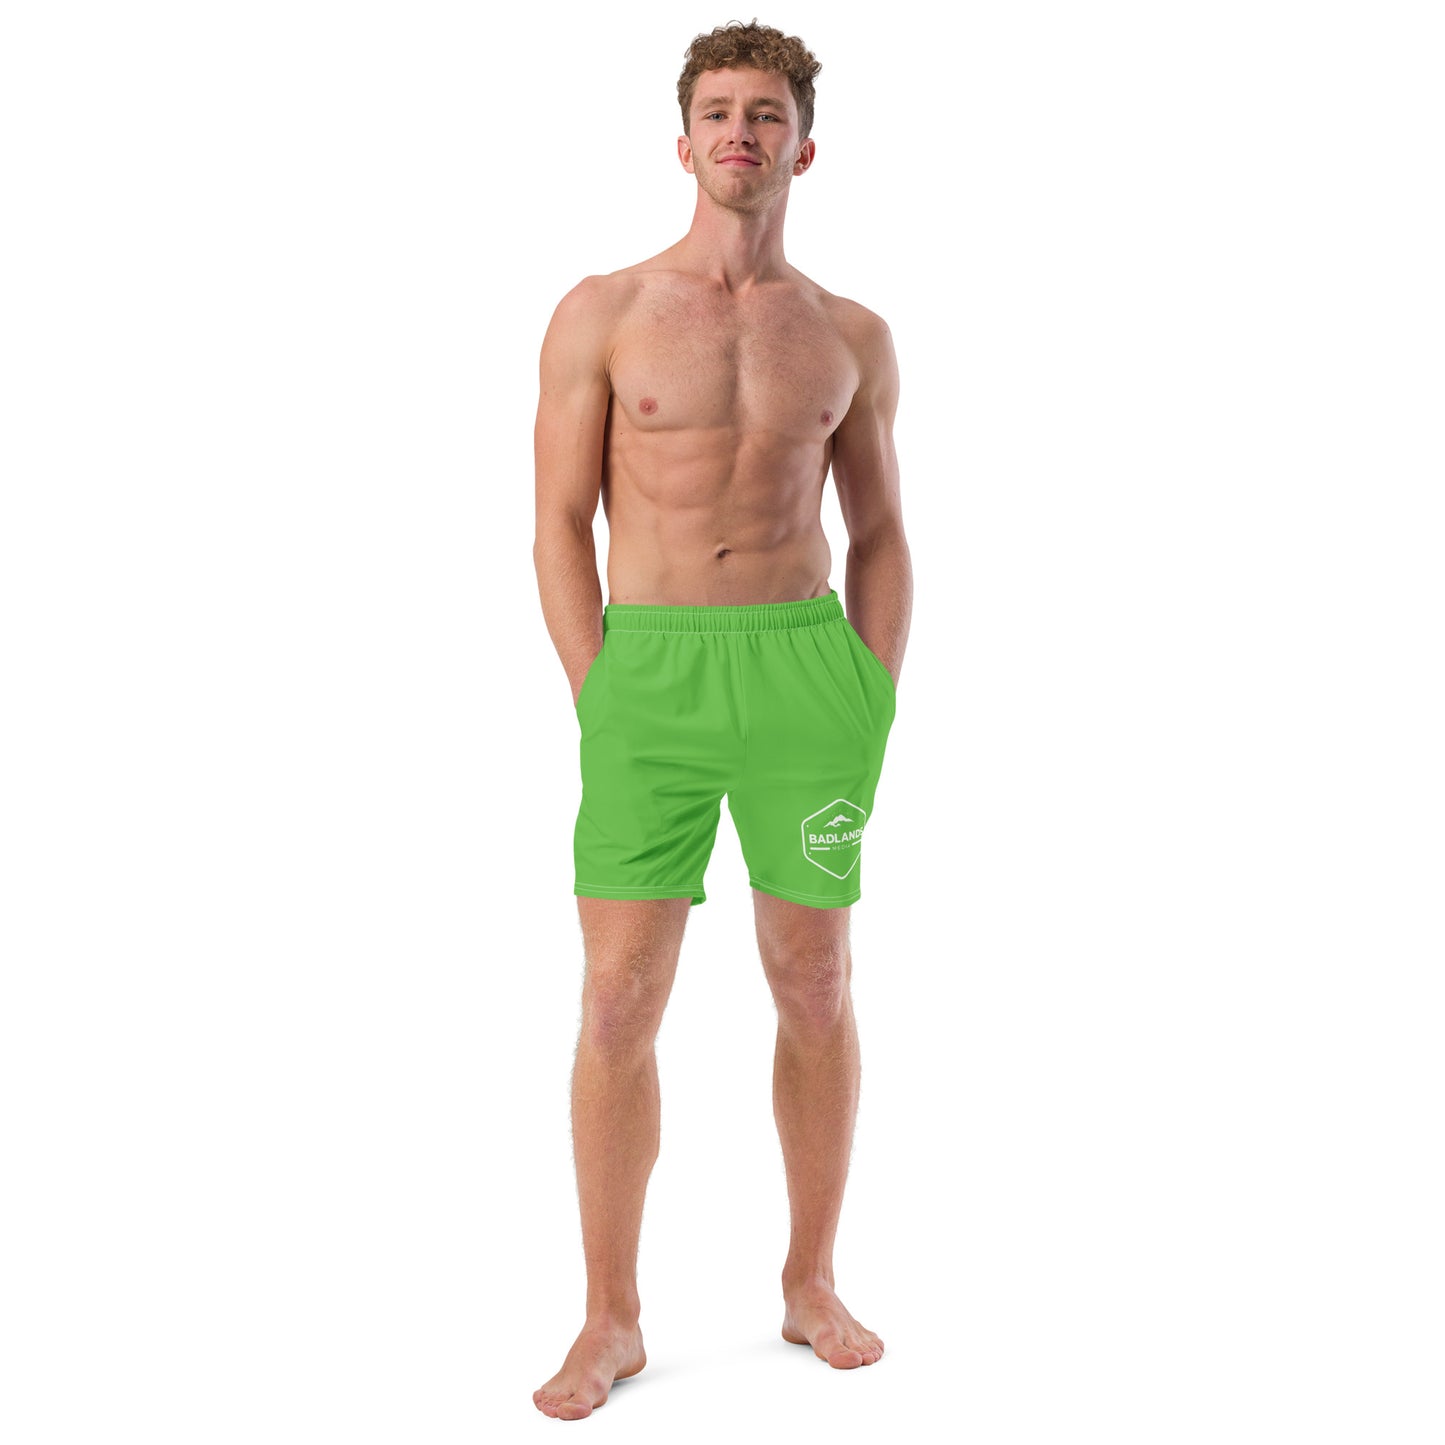 Badlands Men's Swim Trunks in electric green